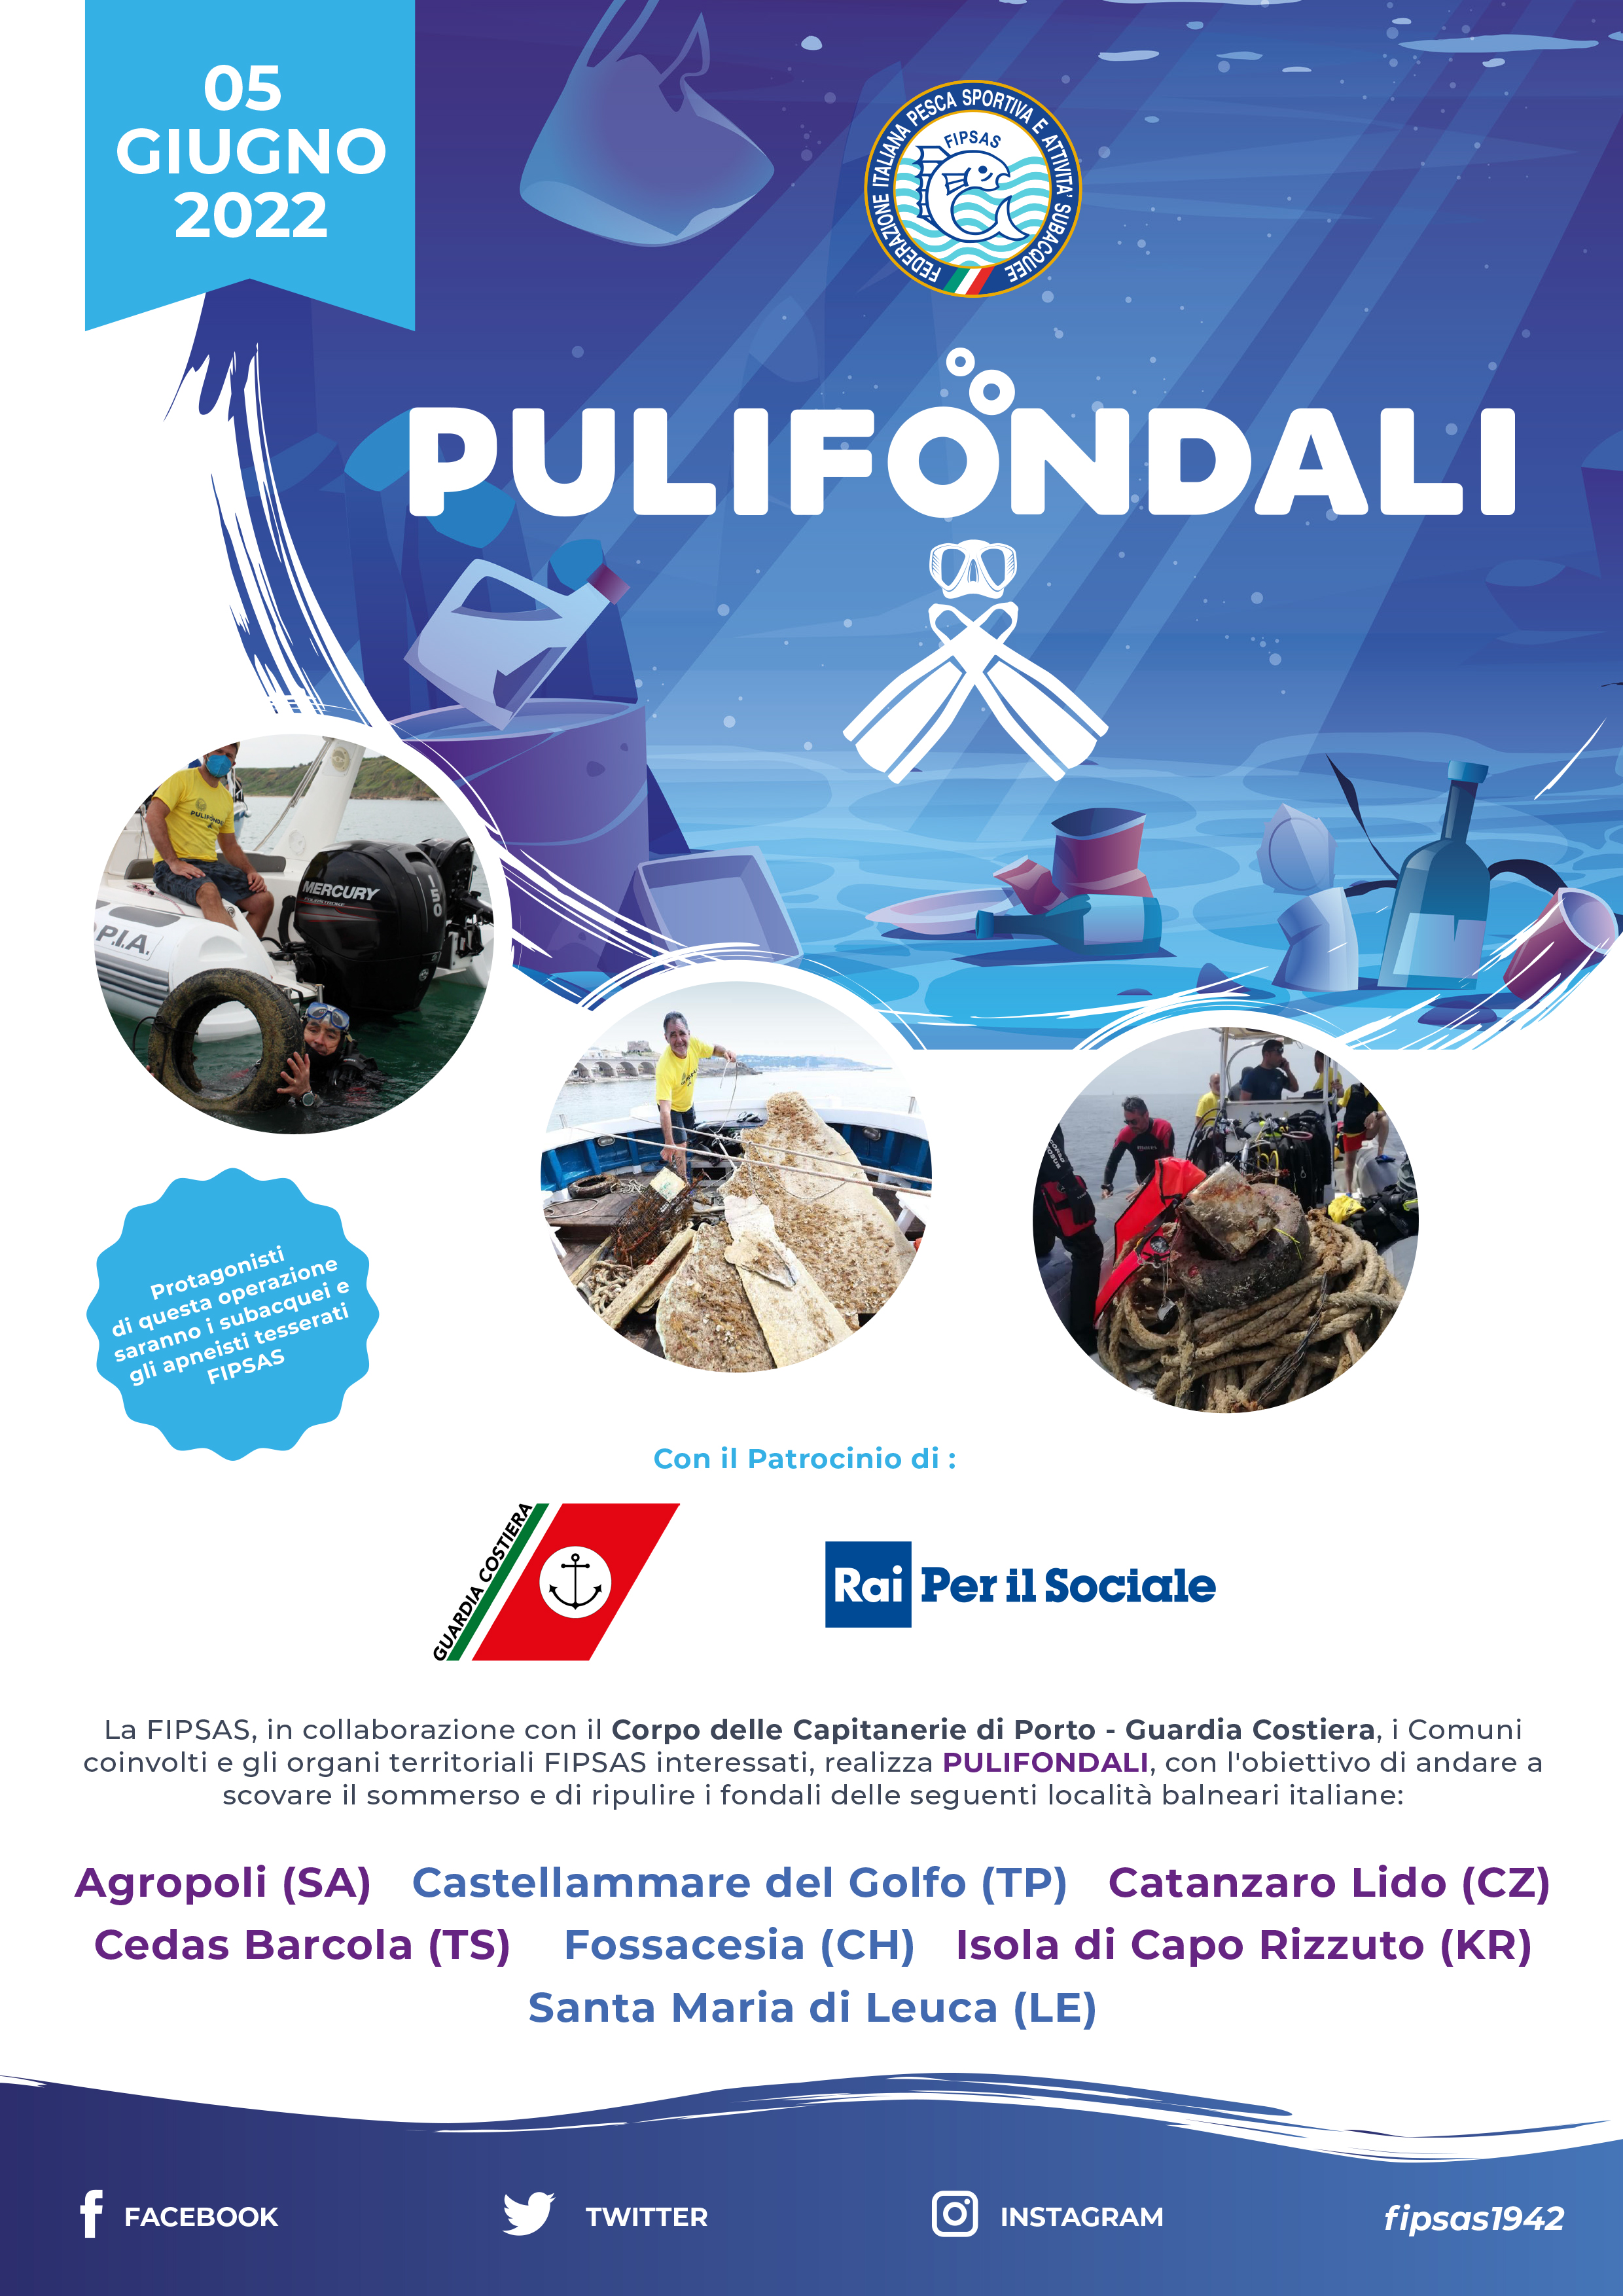 Pulifondali 2022, Abruzzo protagonista I subacquei Fipsas per la “Giornata Mondiale dell’Ambiente” con la Guardia Costiera e Rai per il Sociale